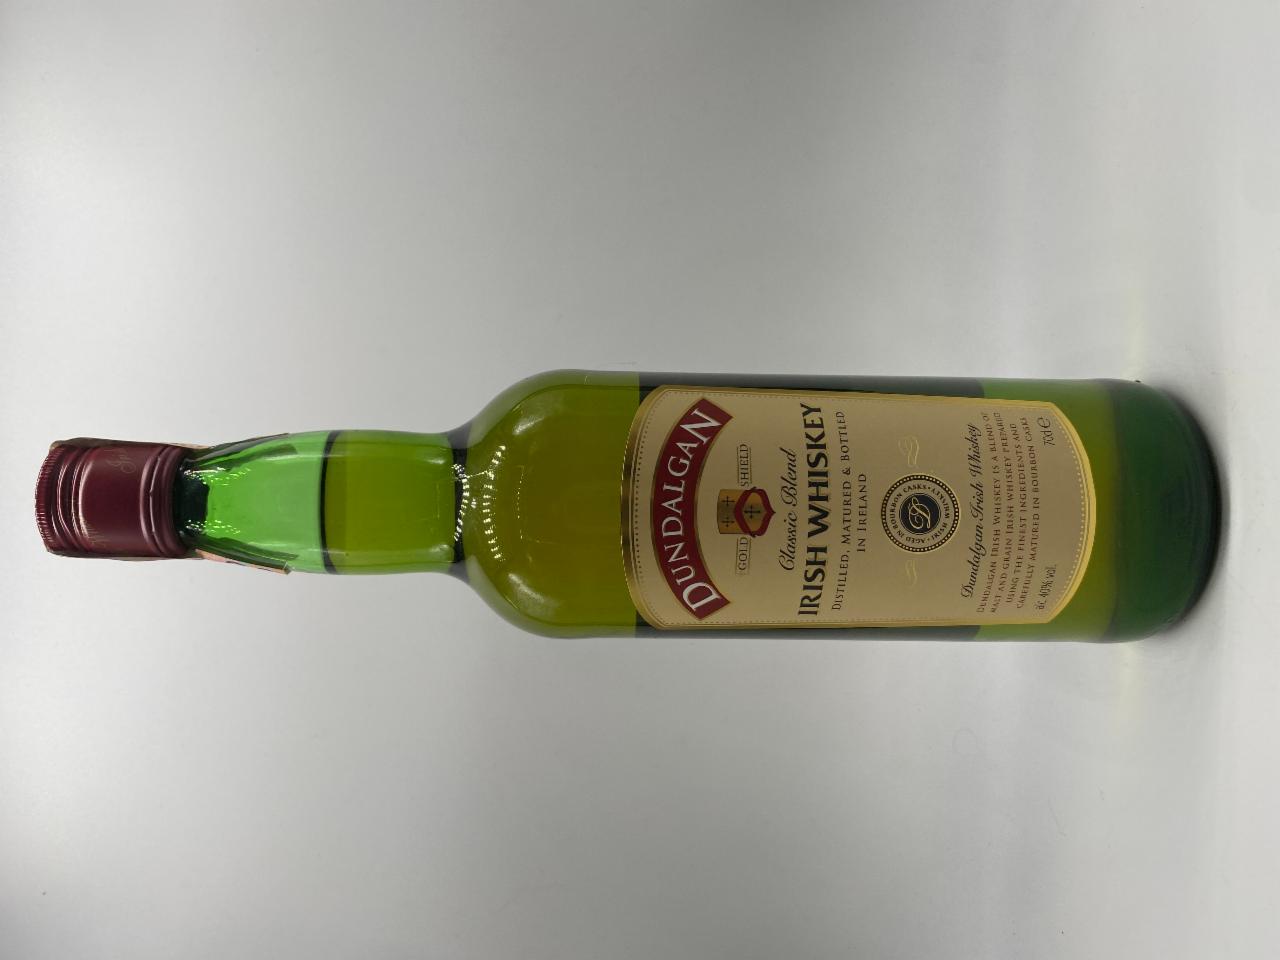 J&B scotch whisky 40% - a kalorie, hodnoty kJ nutriční